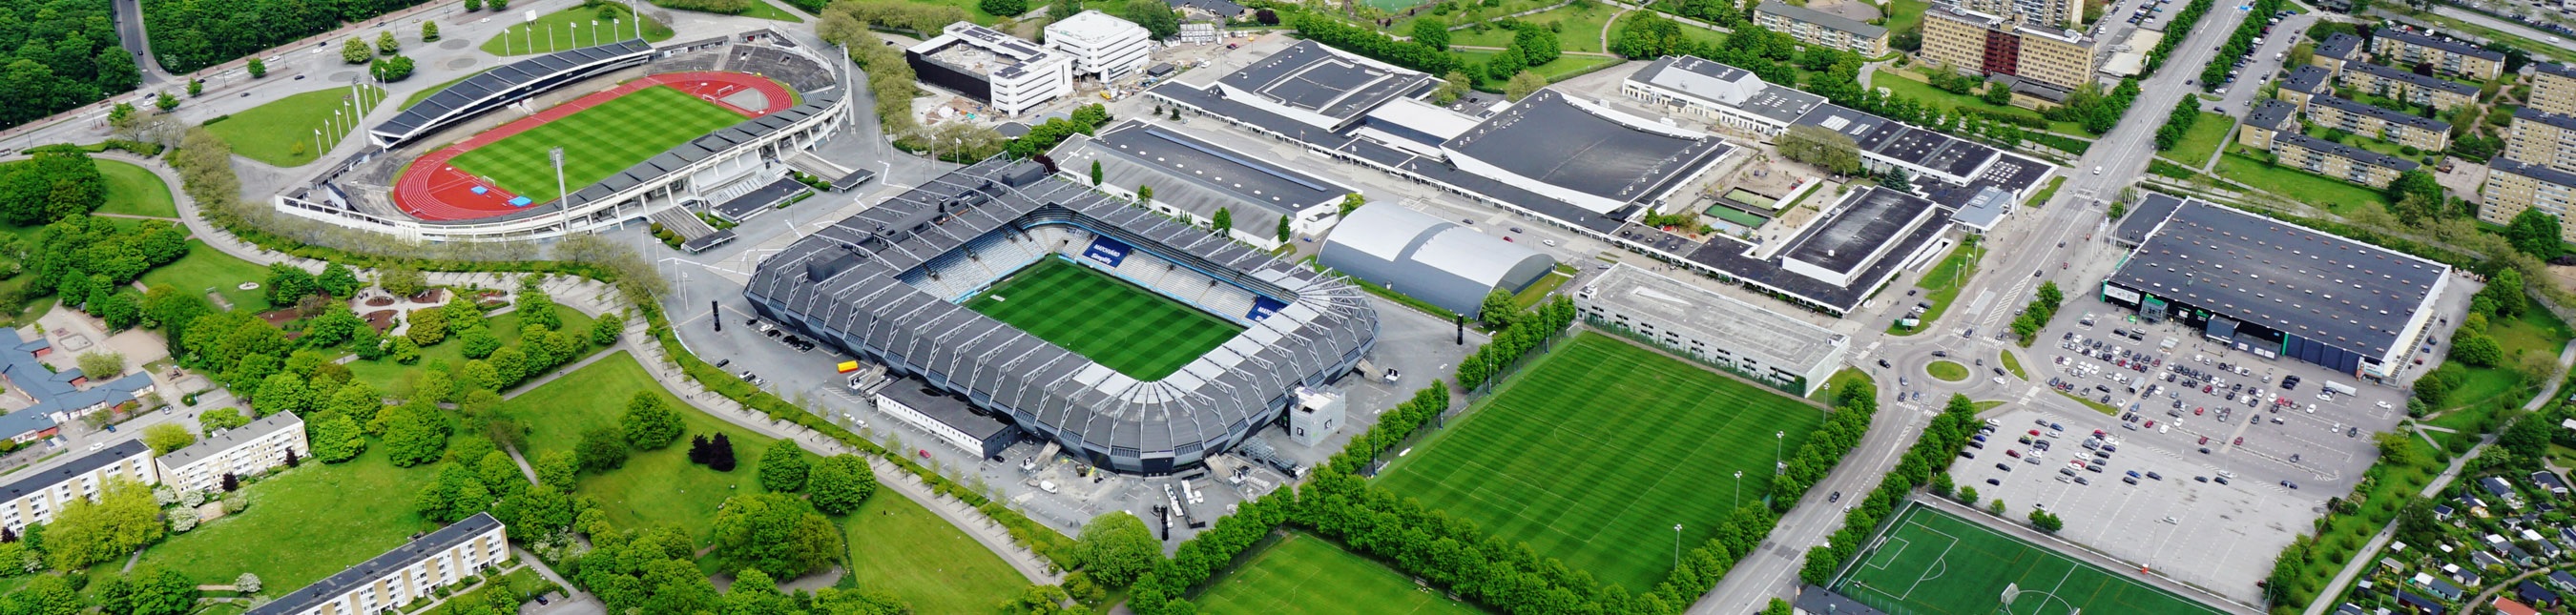 Flygbild över stadionområdet som är en plats i Malmö med flera arenor och lokaler på samma ställe.